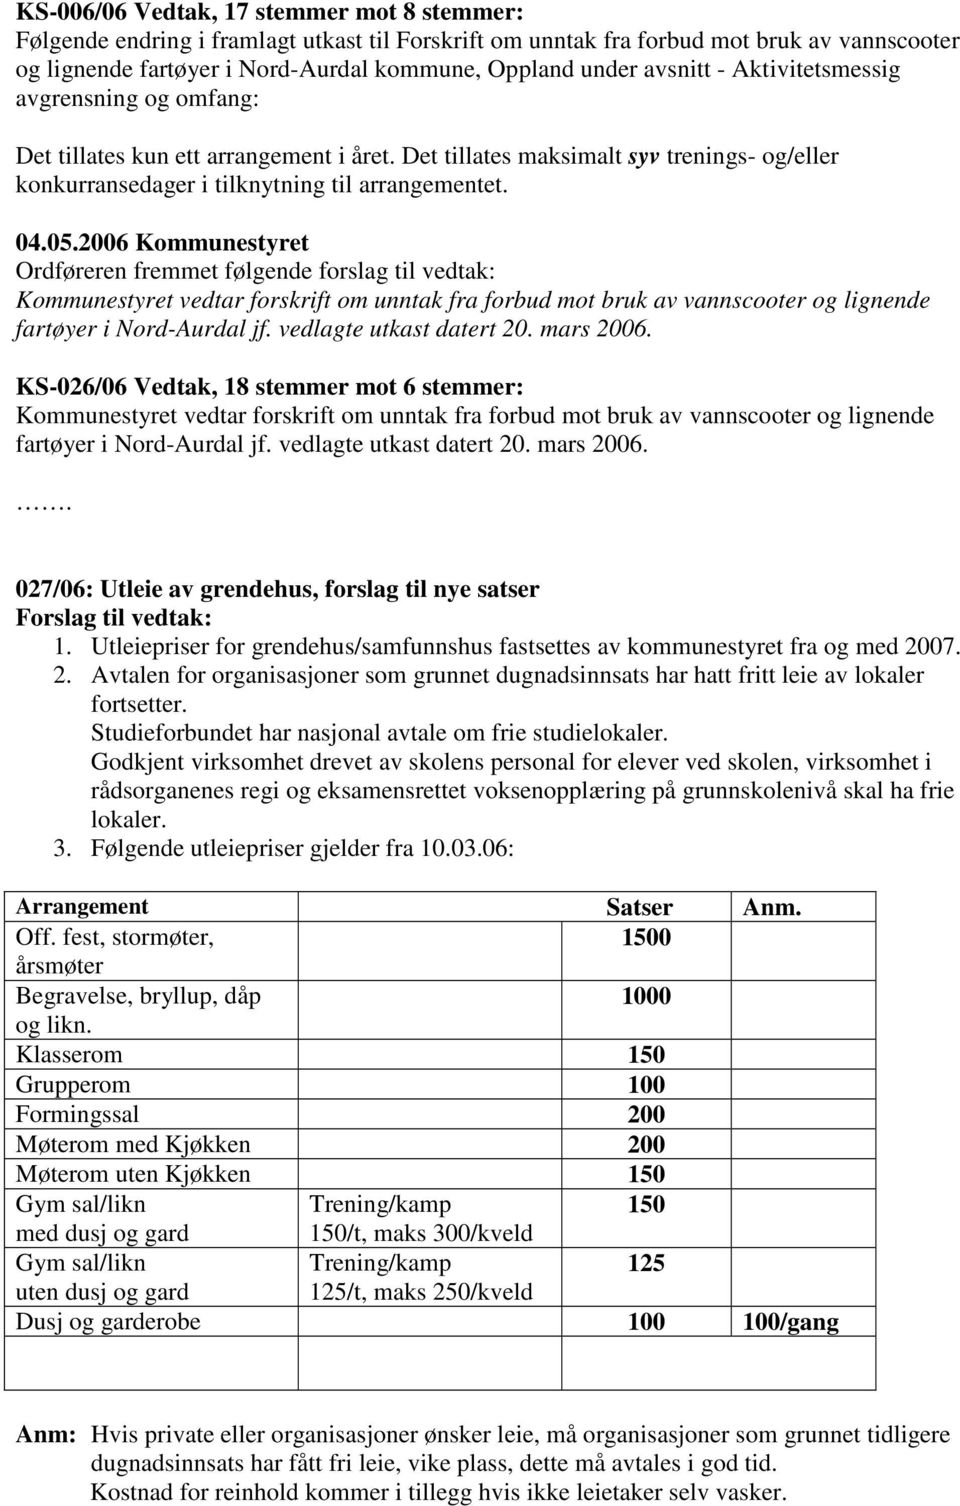 Ordføreren fremmet følgende forslag til vedtak: Kommunestyret vedtar forskrift om unntak fra forbud mot bruk av vannscooter og lignende fartøyer i Nord-Aurdal jf. vedlagte utkast datert 20. mars 2006.